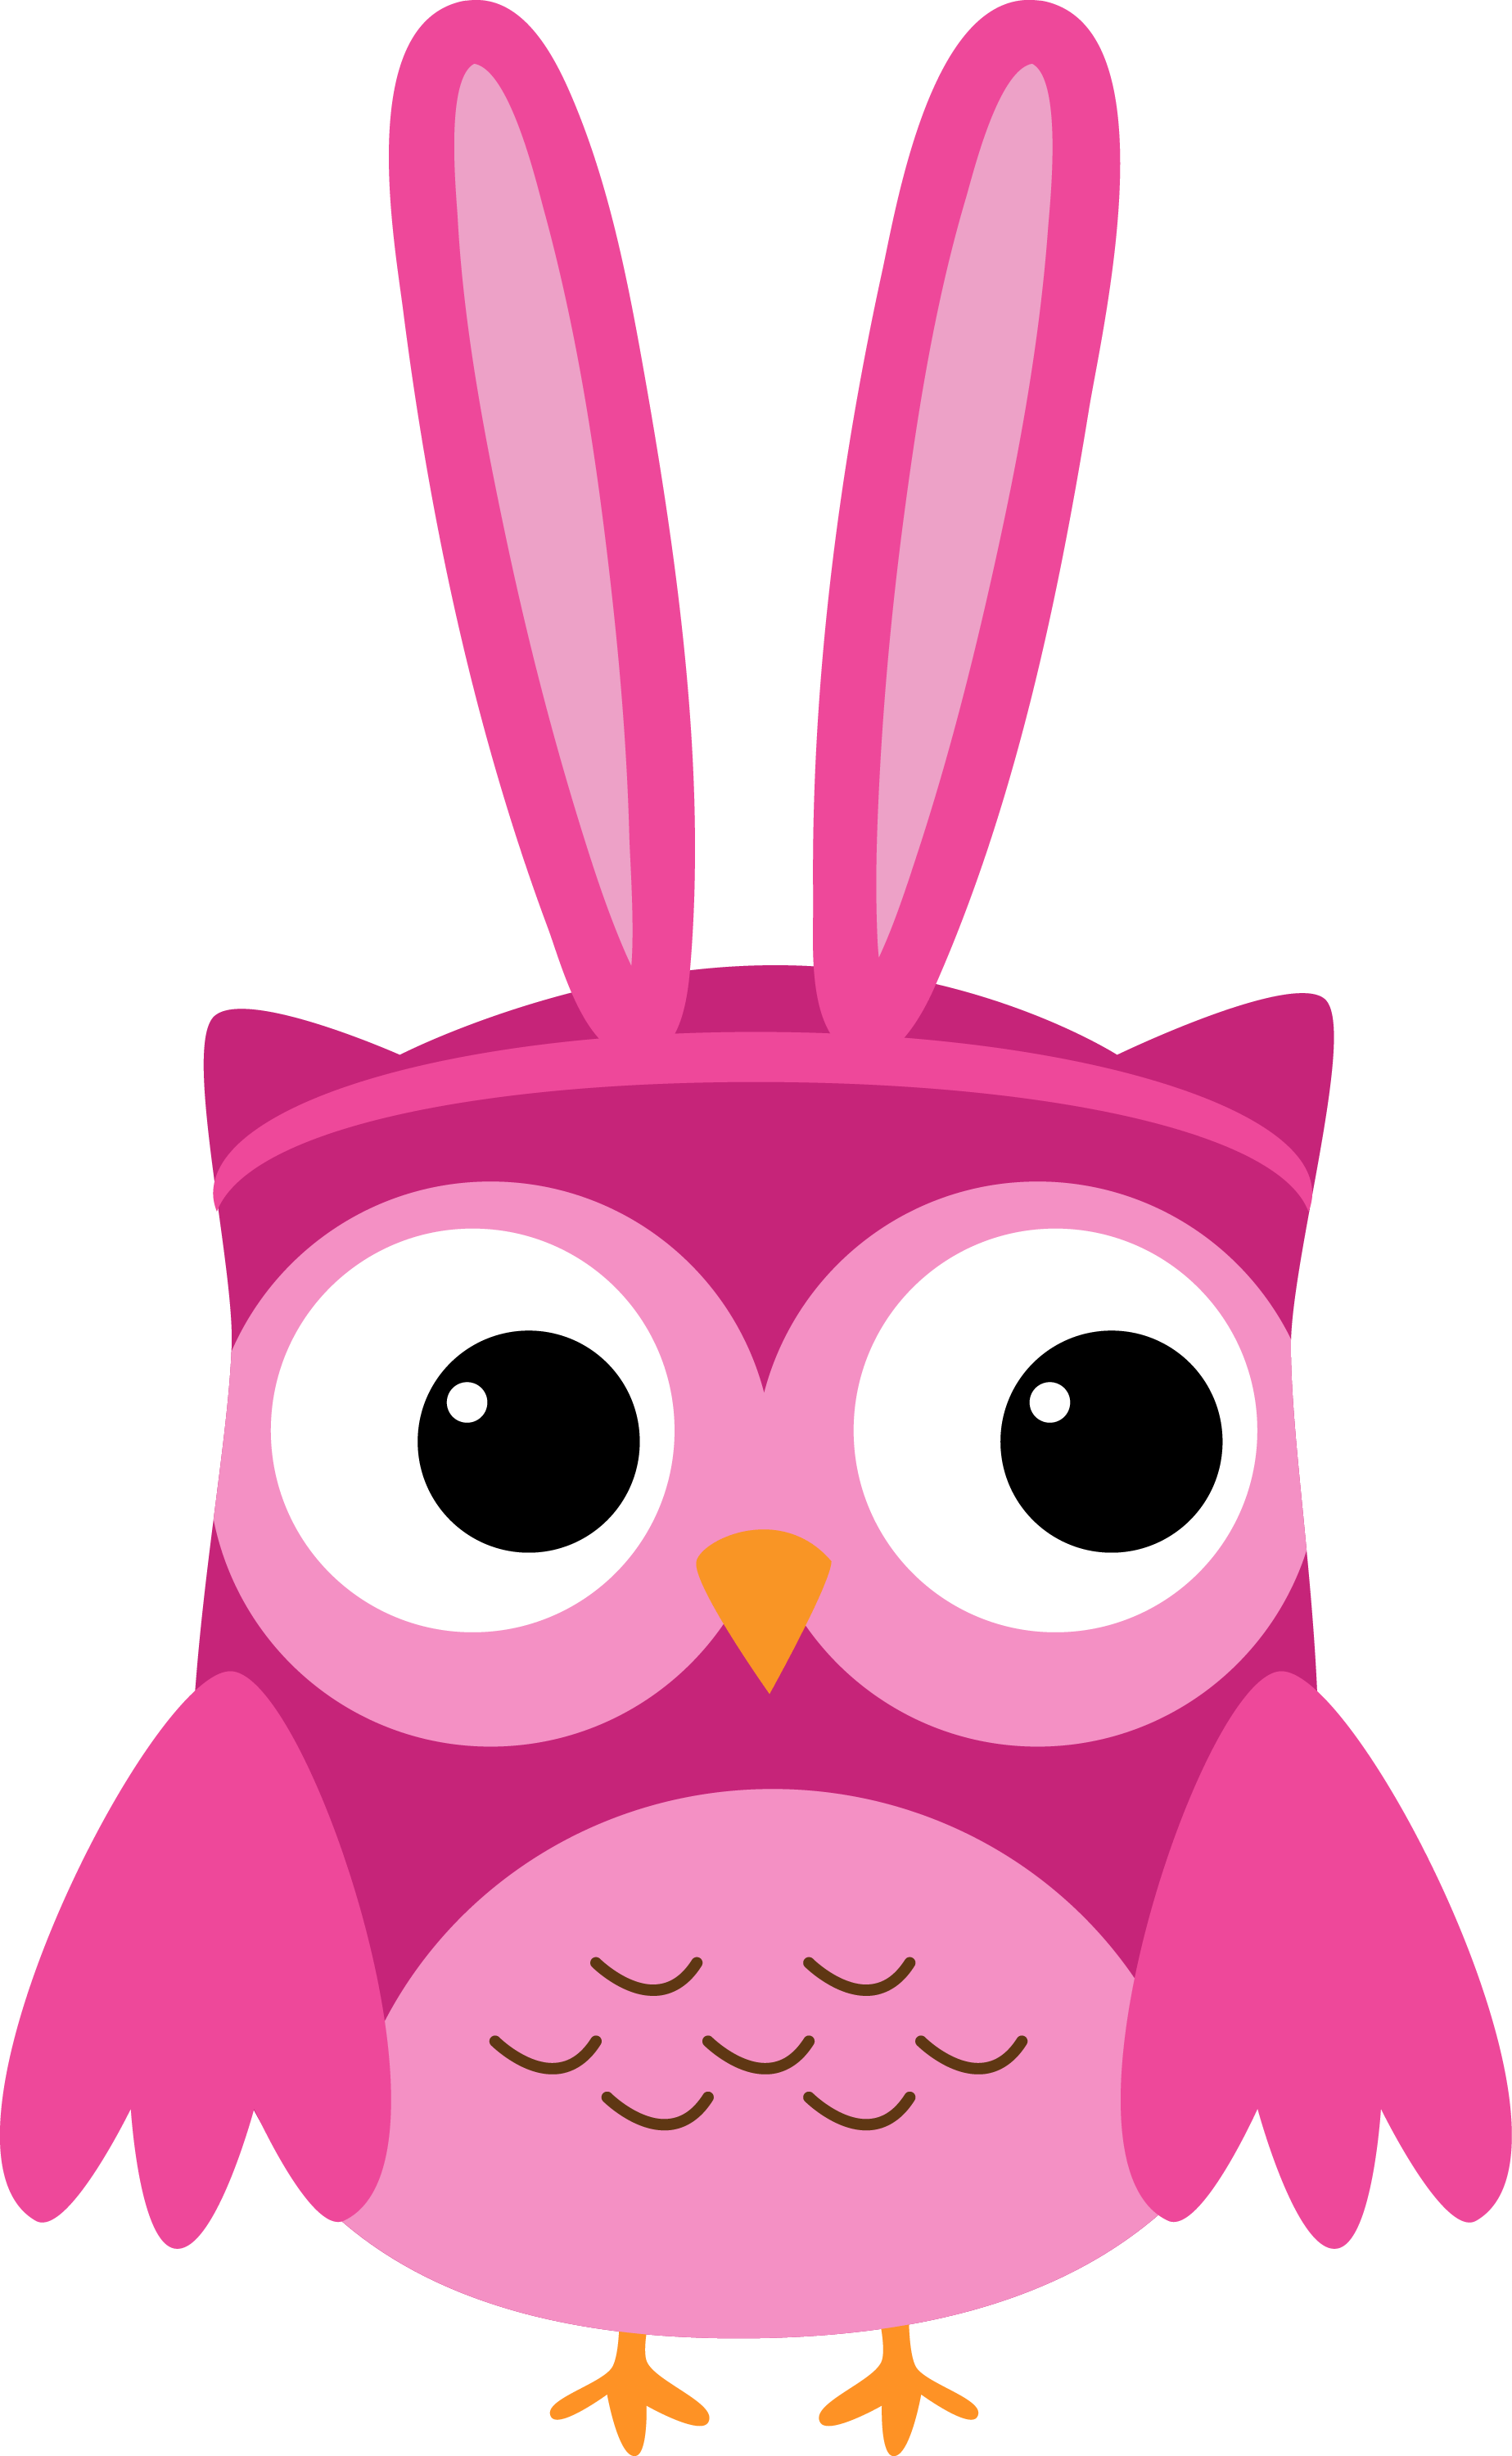 A Cartoon Of A Pink Owl